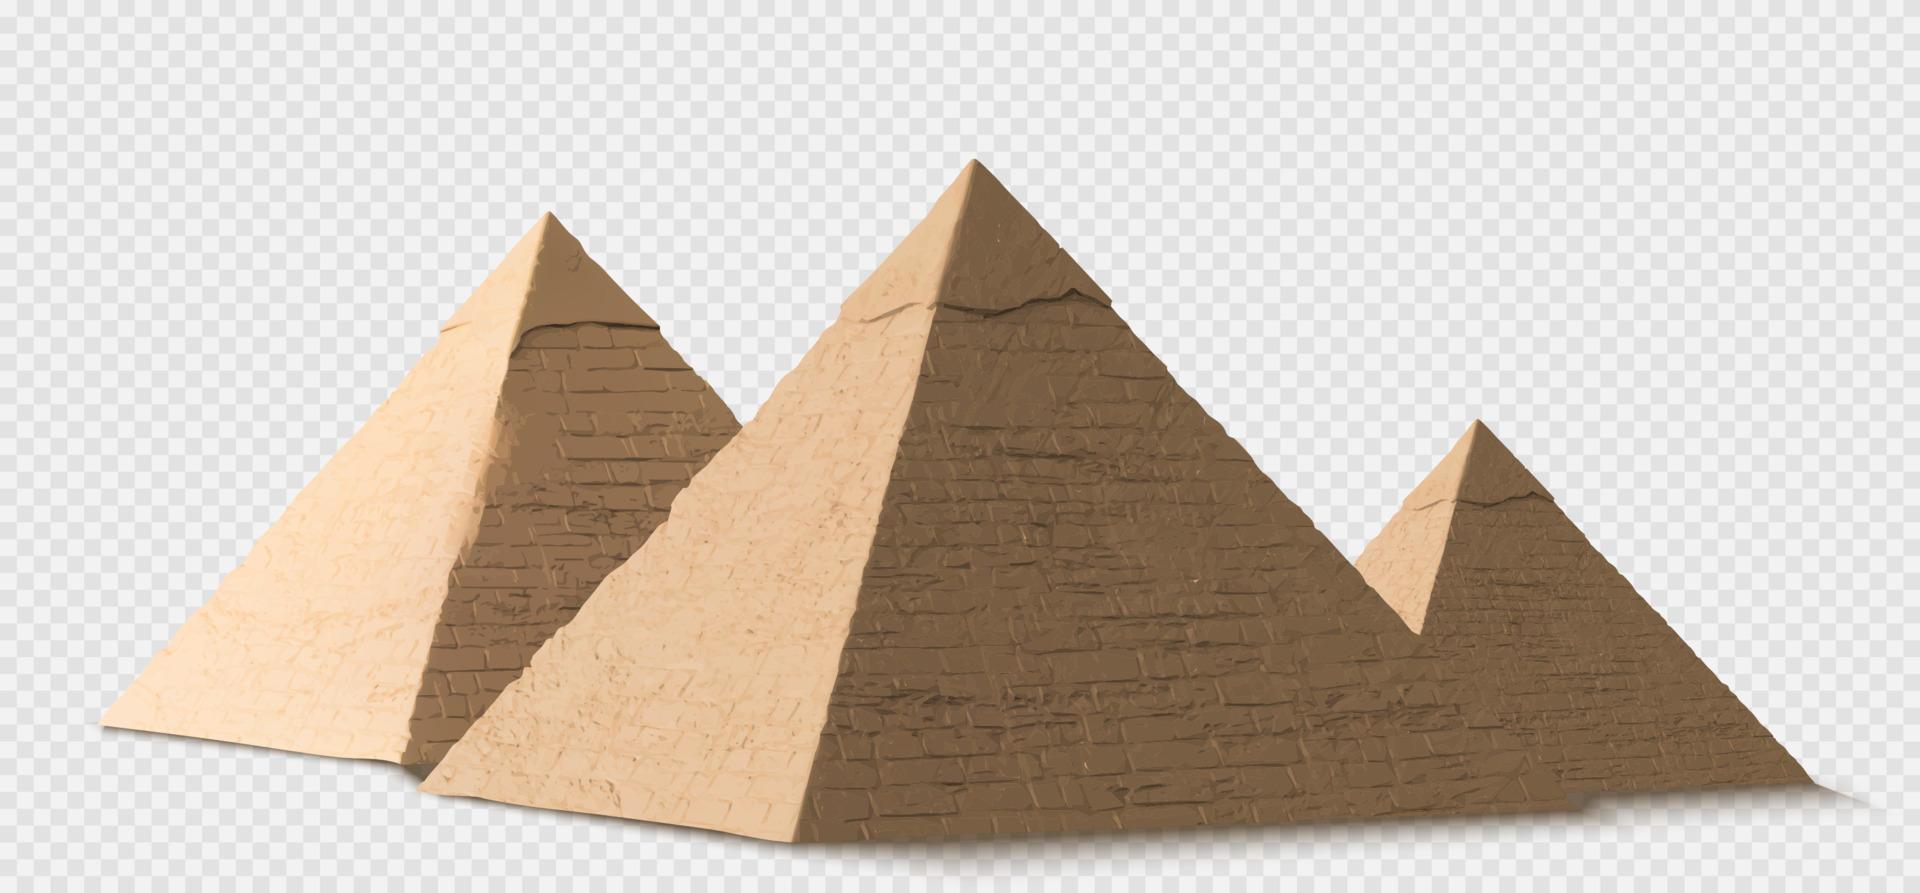 pirámides egipcias en giza, antiguas tumbas de faraones vector